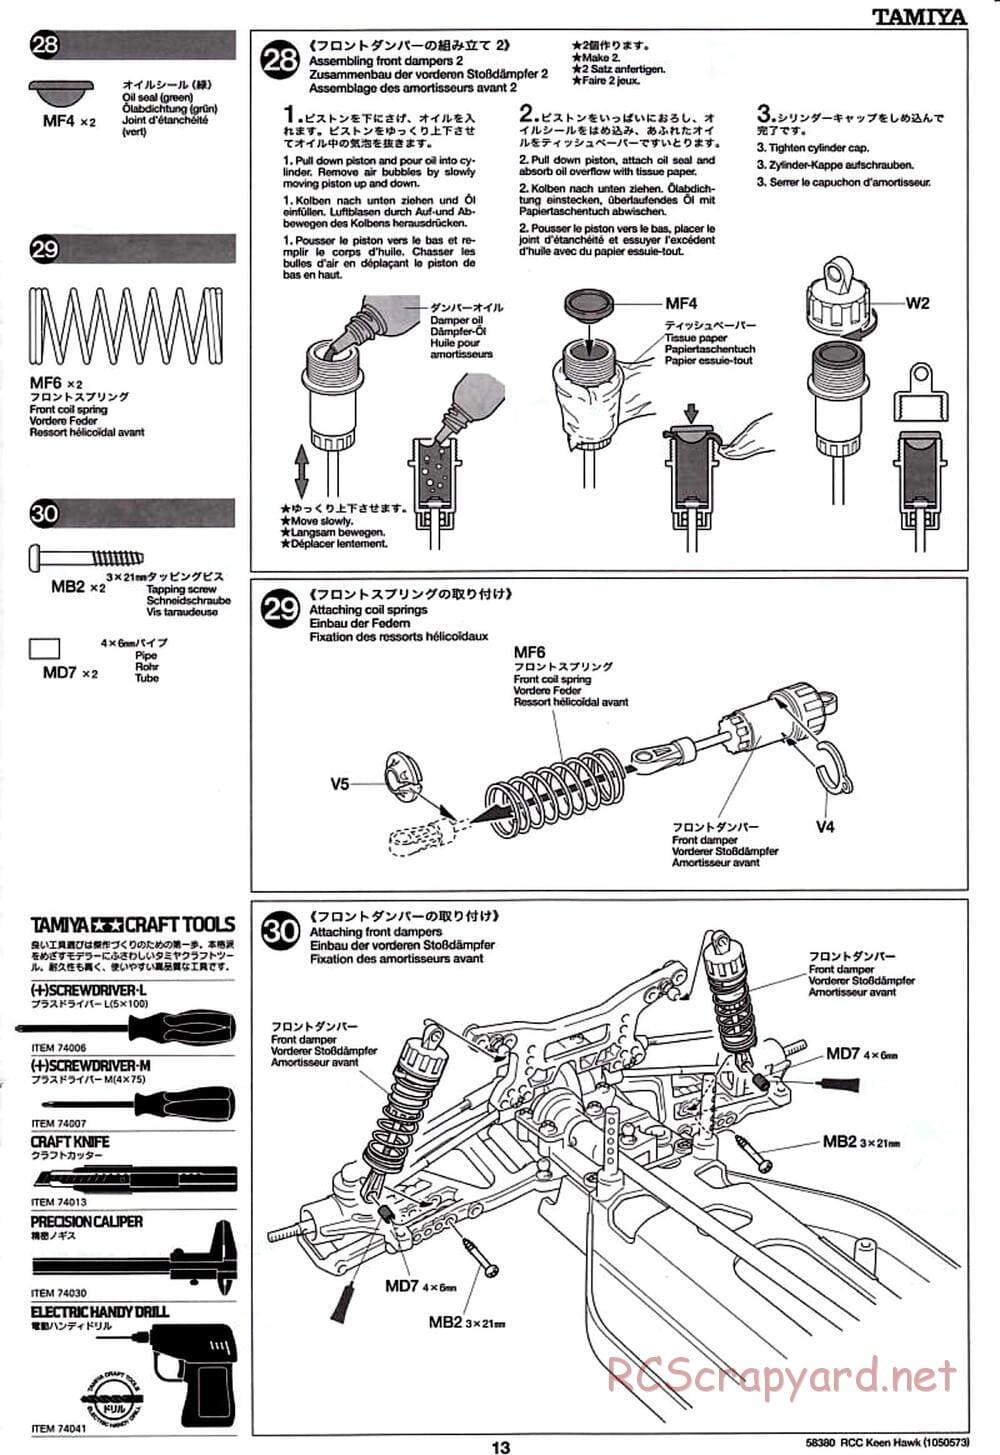 Tamiya - Keen Hawk Chassis - Manual - Page 13